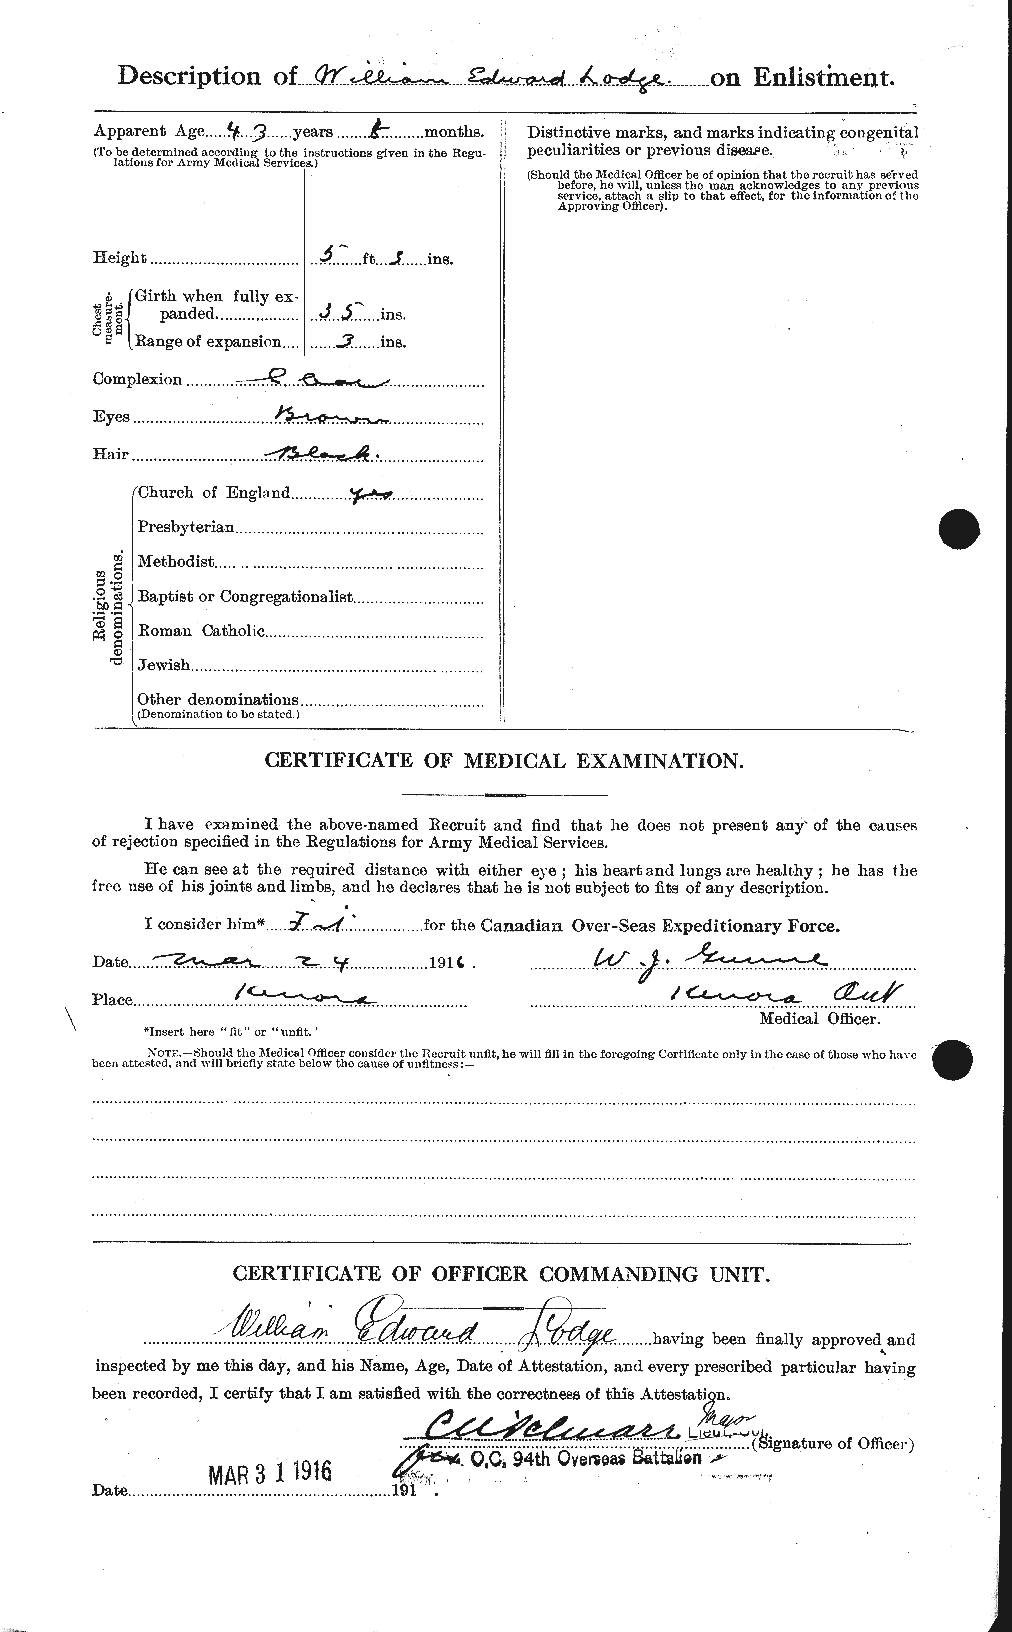 Dossiers du Personnel de la Première Guerre mondiale - CEC 464824b